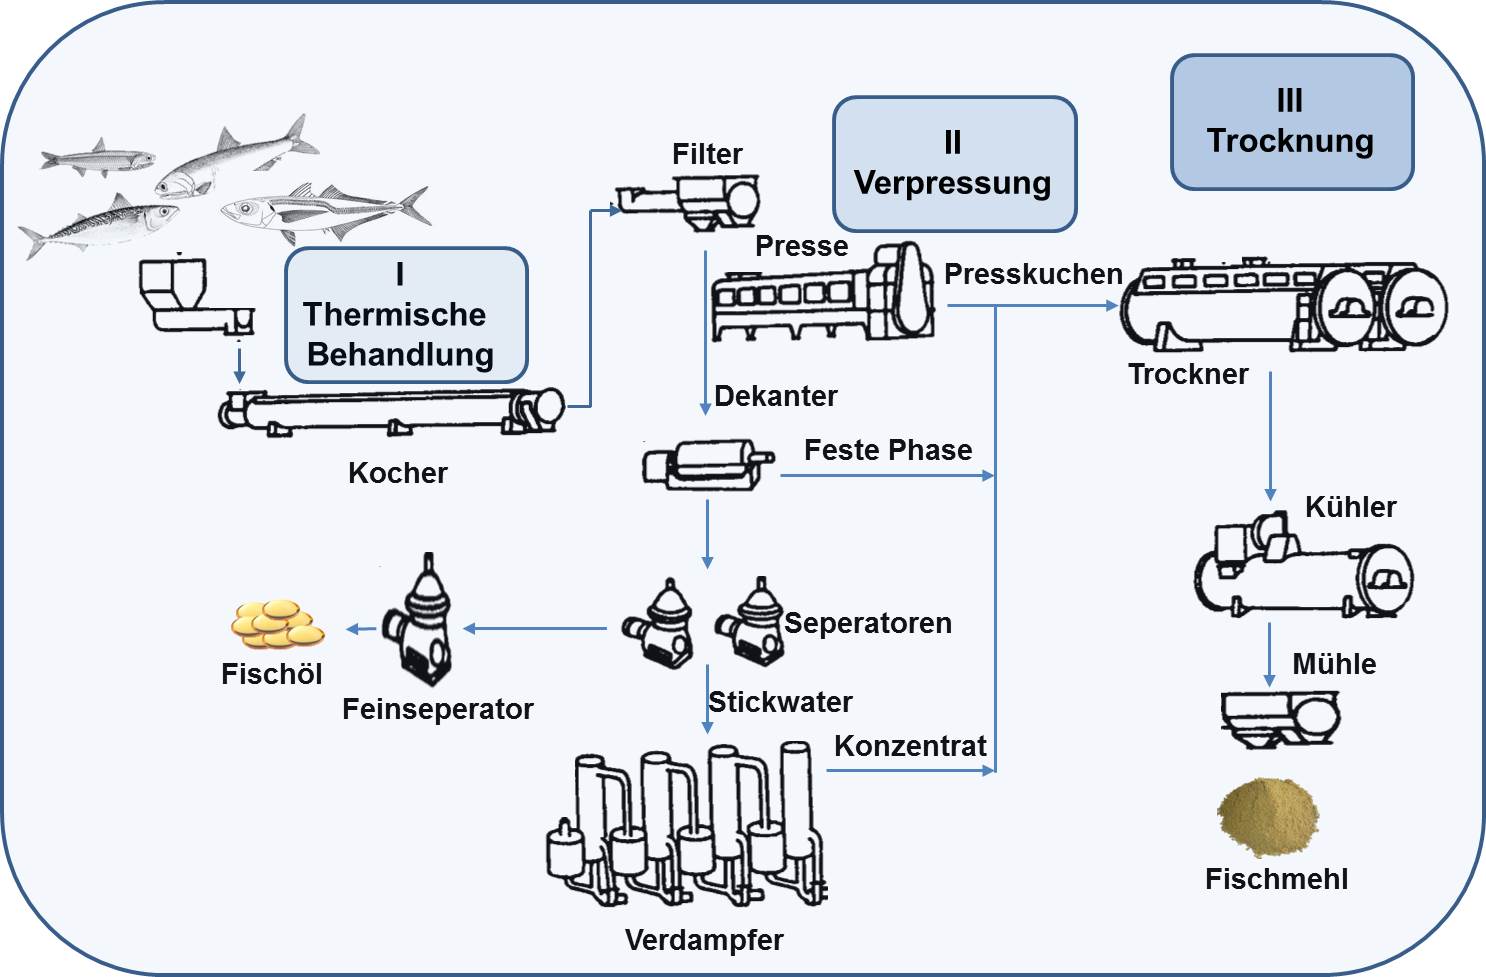 Fischmehl - Produktionsprozess